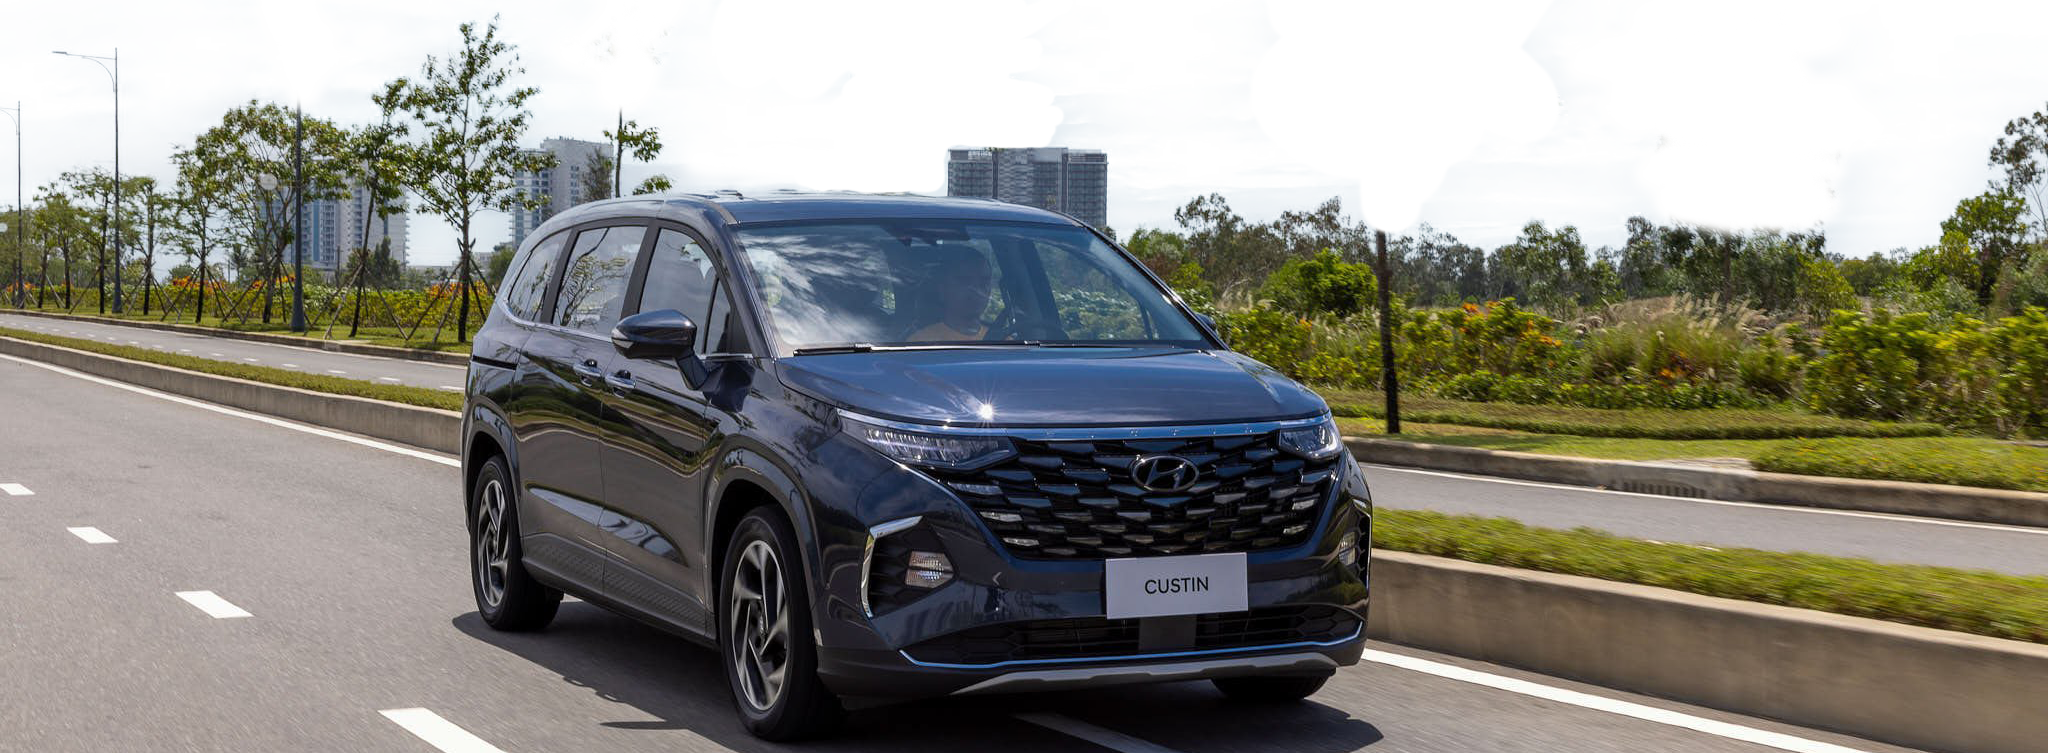 Hyundai ra mắt 2 dòng xe Palisade và Custin với giá siêu hấp dẫn